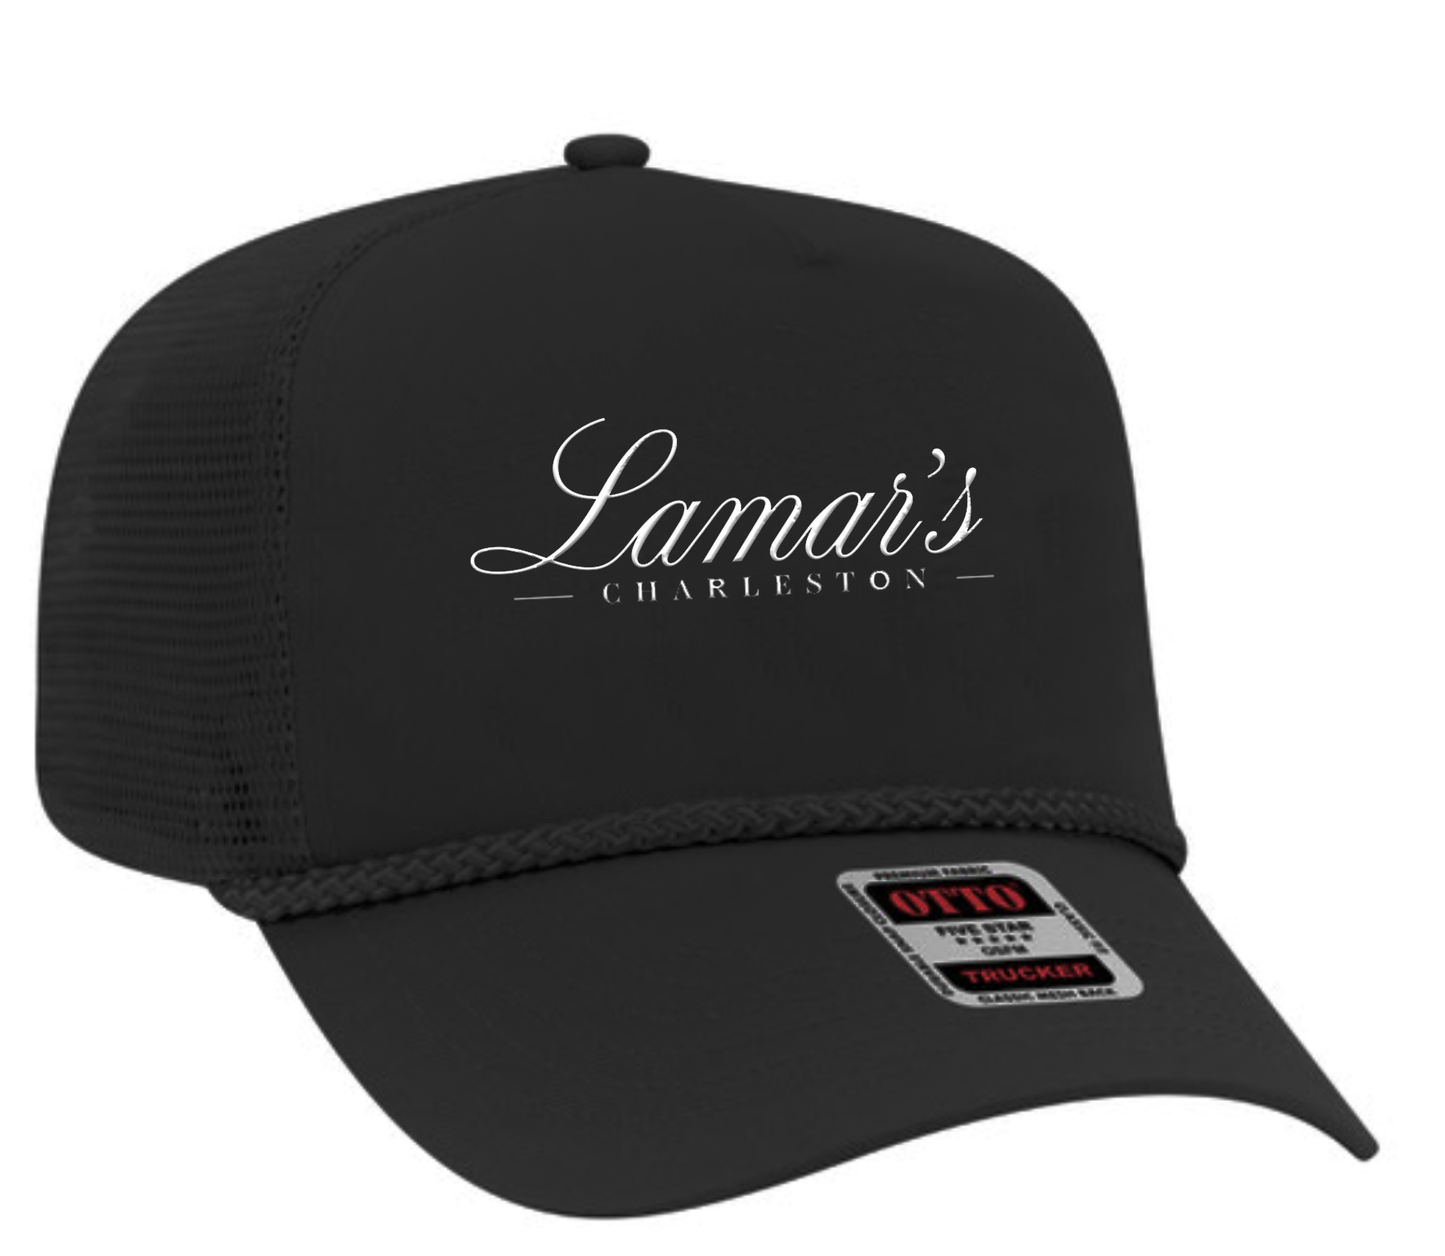 Lamar's Sporting Club Trucker Hat - Black